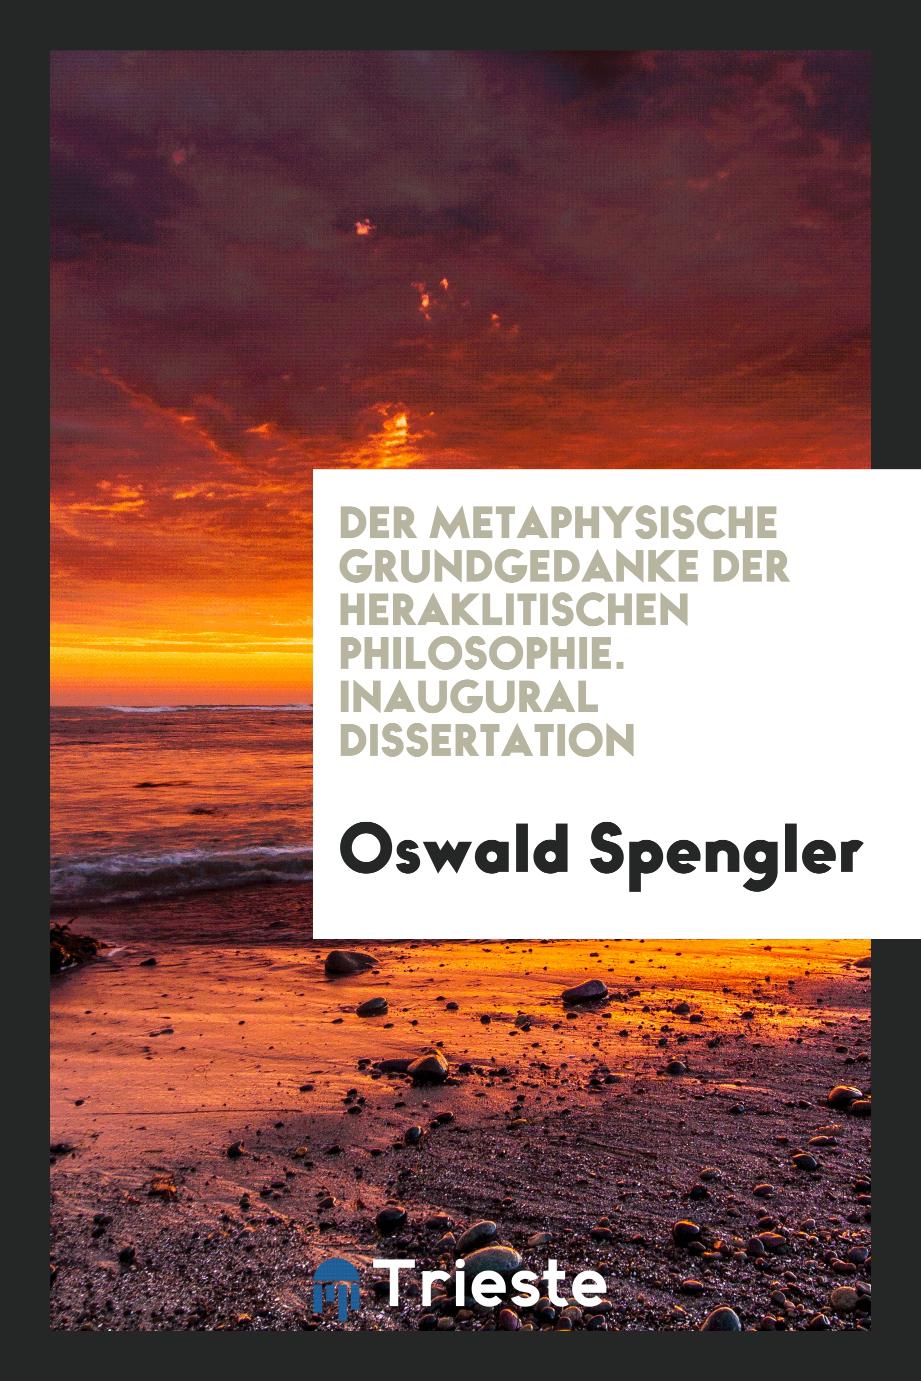 Der Metaphysische Grundgedanke der Heraklitischen Philosophie. Inaugural Dissertation